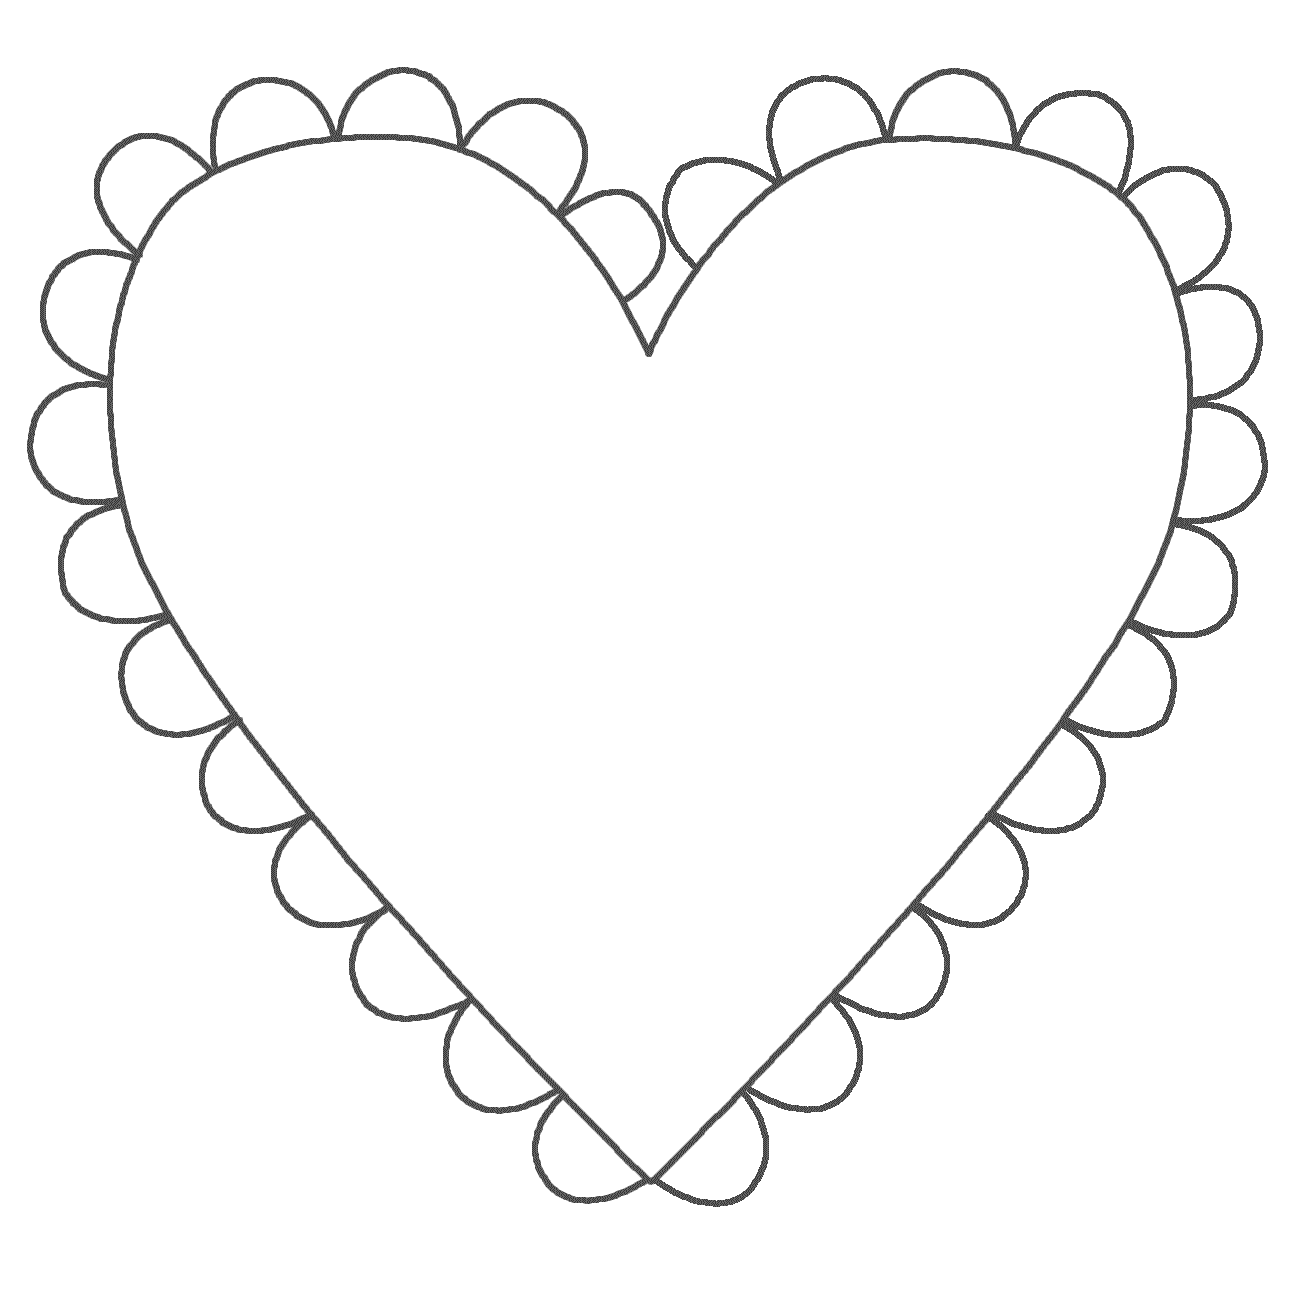 Розмальовки шаблони сердечок для вирізання  сердечко з мереживом для вирізки з паперу, для творчості дітей